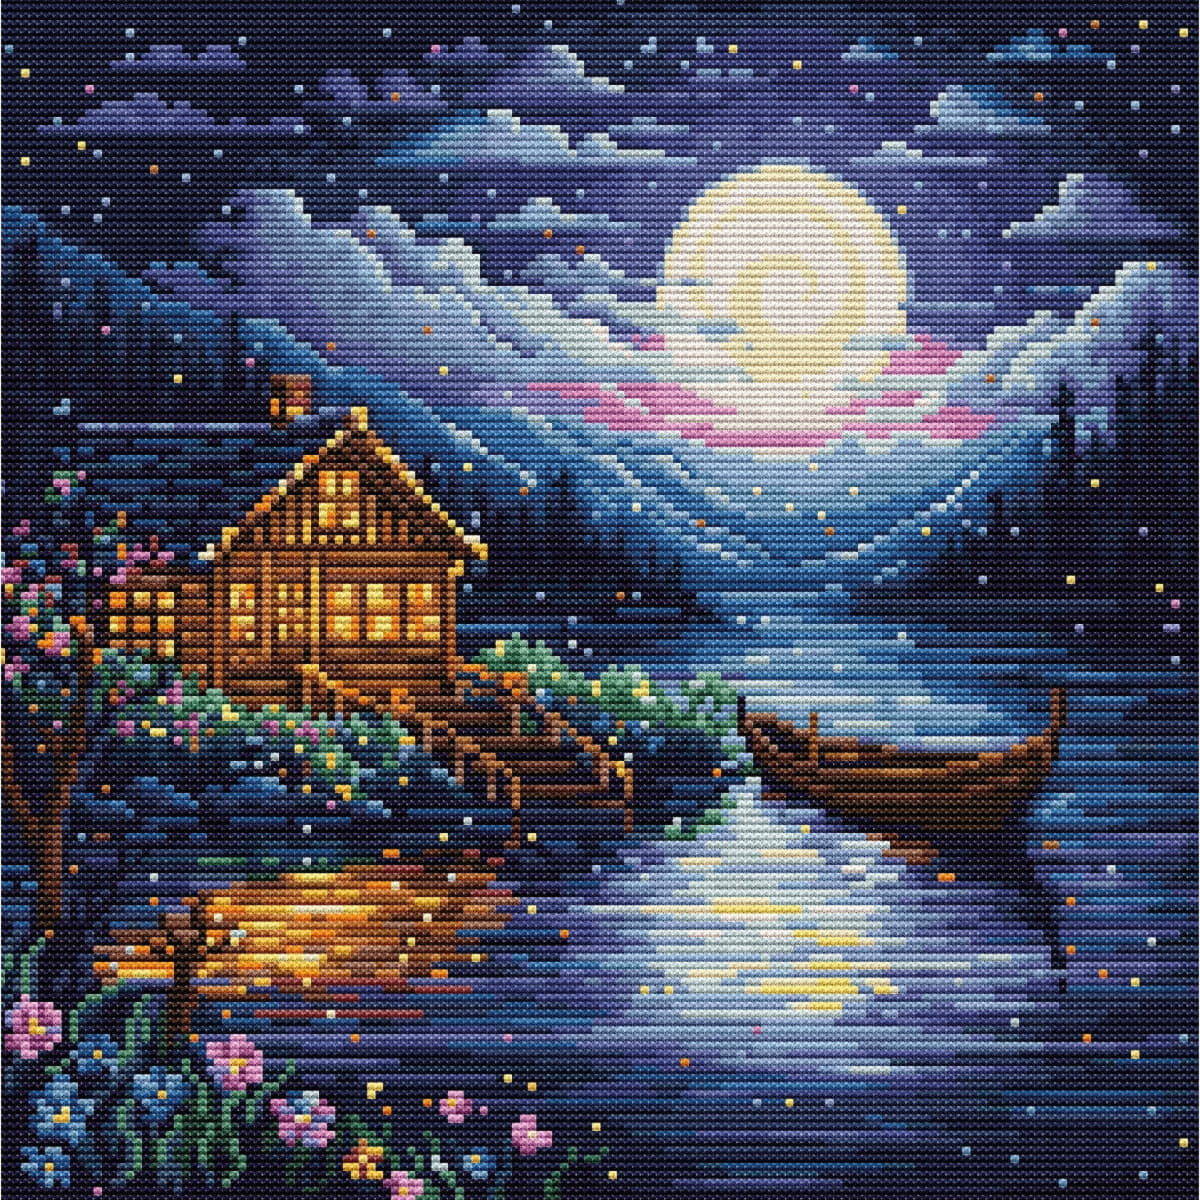 Une scène de nuit calme avec une cabane en bois...